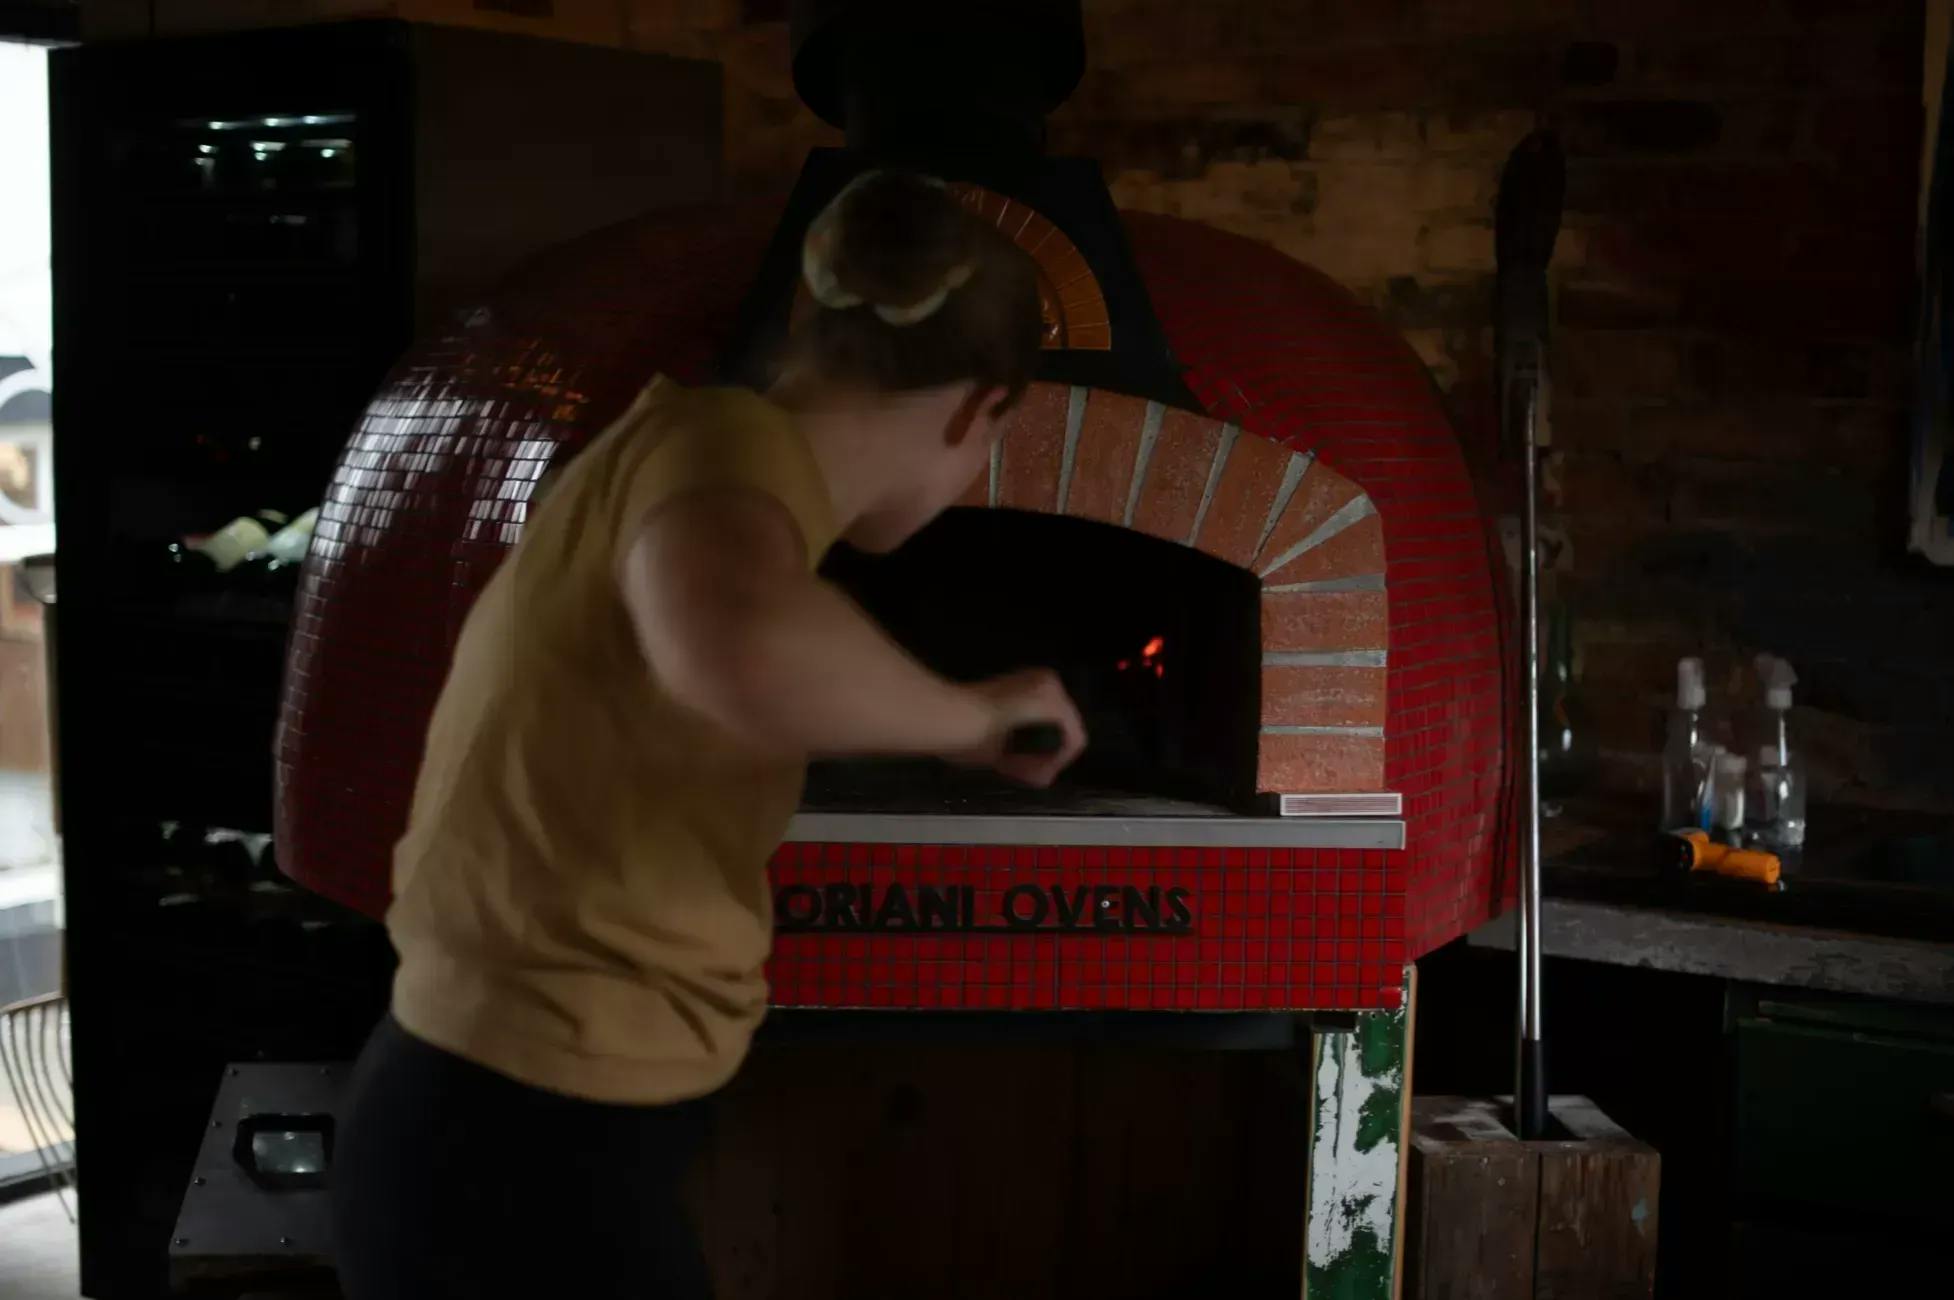 Jente som setter inn en pizza med pizzaspade i en rød italiensk pizzaovn. Merket på ovnen er Fiorni Ovens